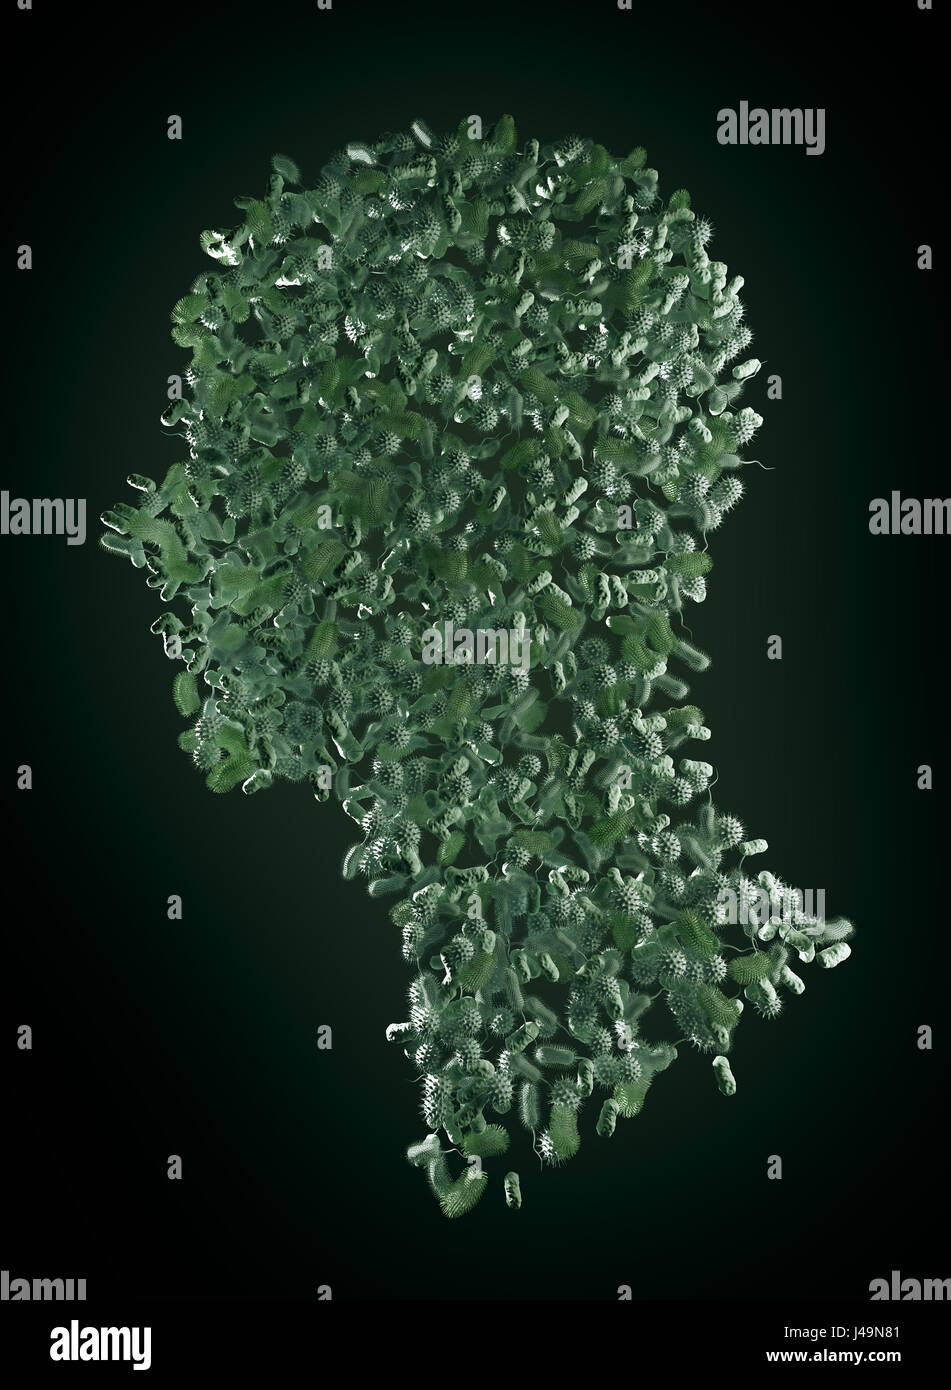 Les bactéries formant un corps humain - microbiome et probiotiques concept 3D illustration. Banque D'Images